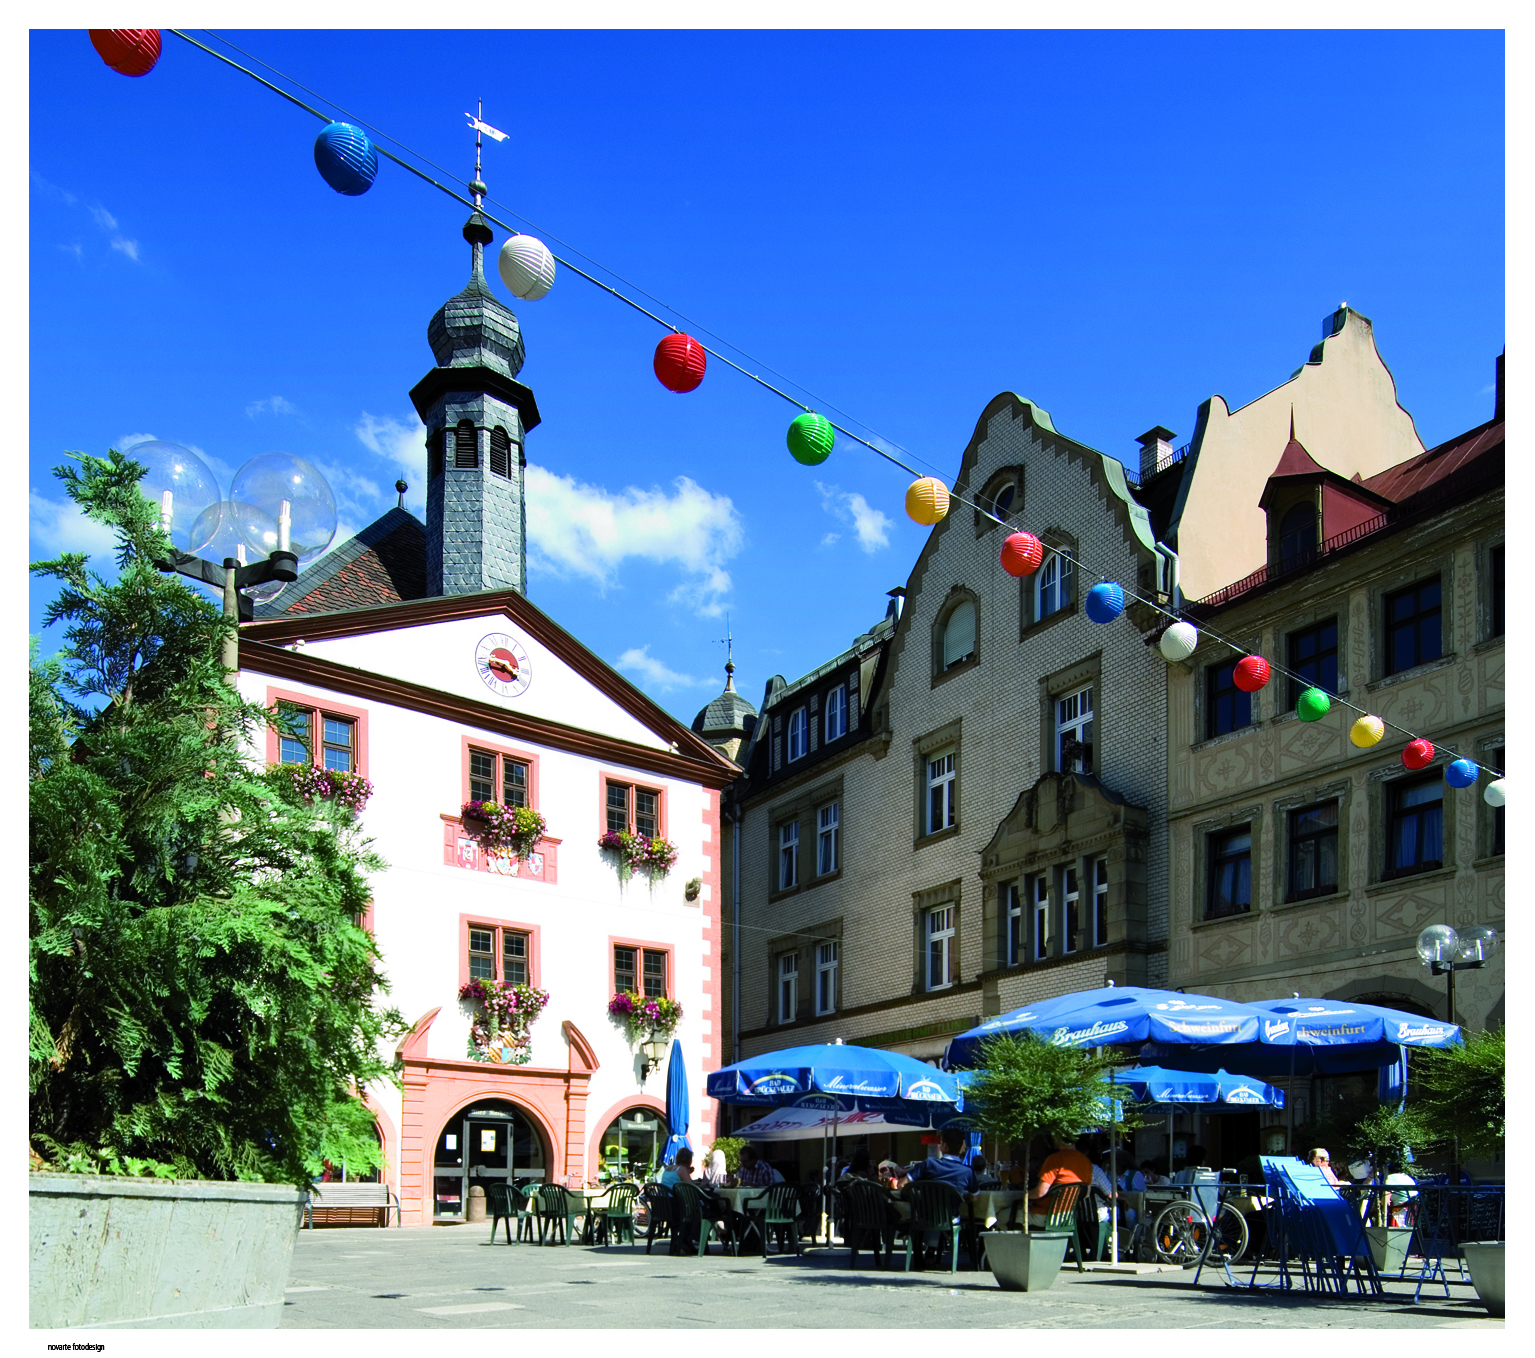 Das Alte Rathaus von Bad Kissingen mit Marktplatz.
